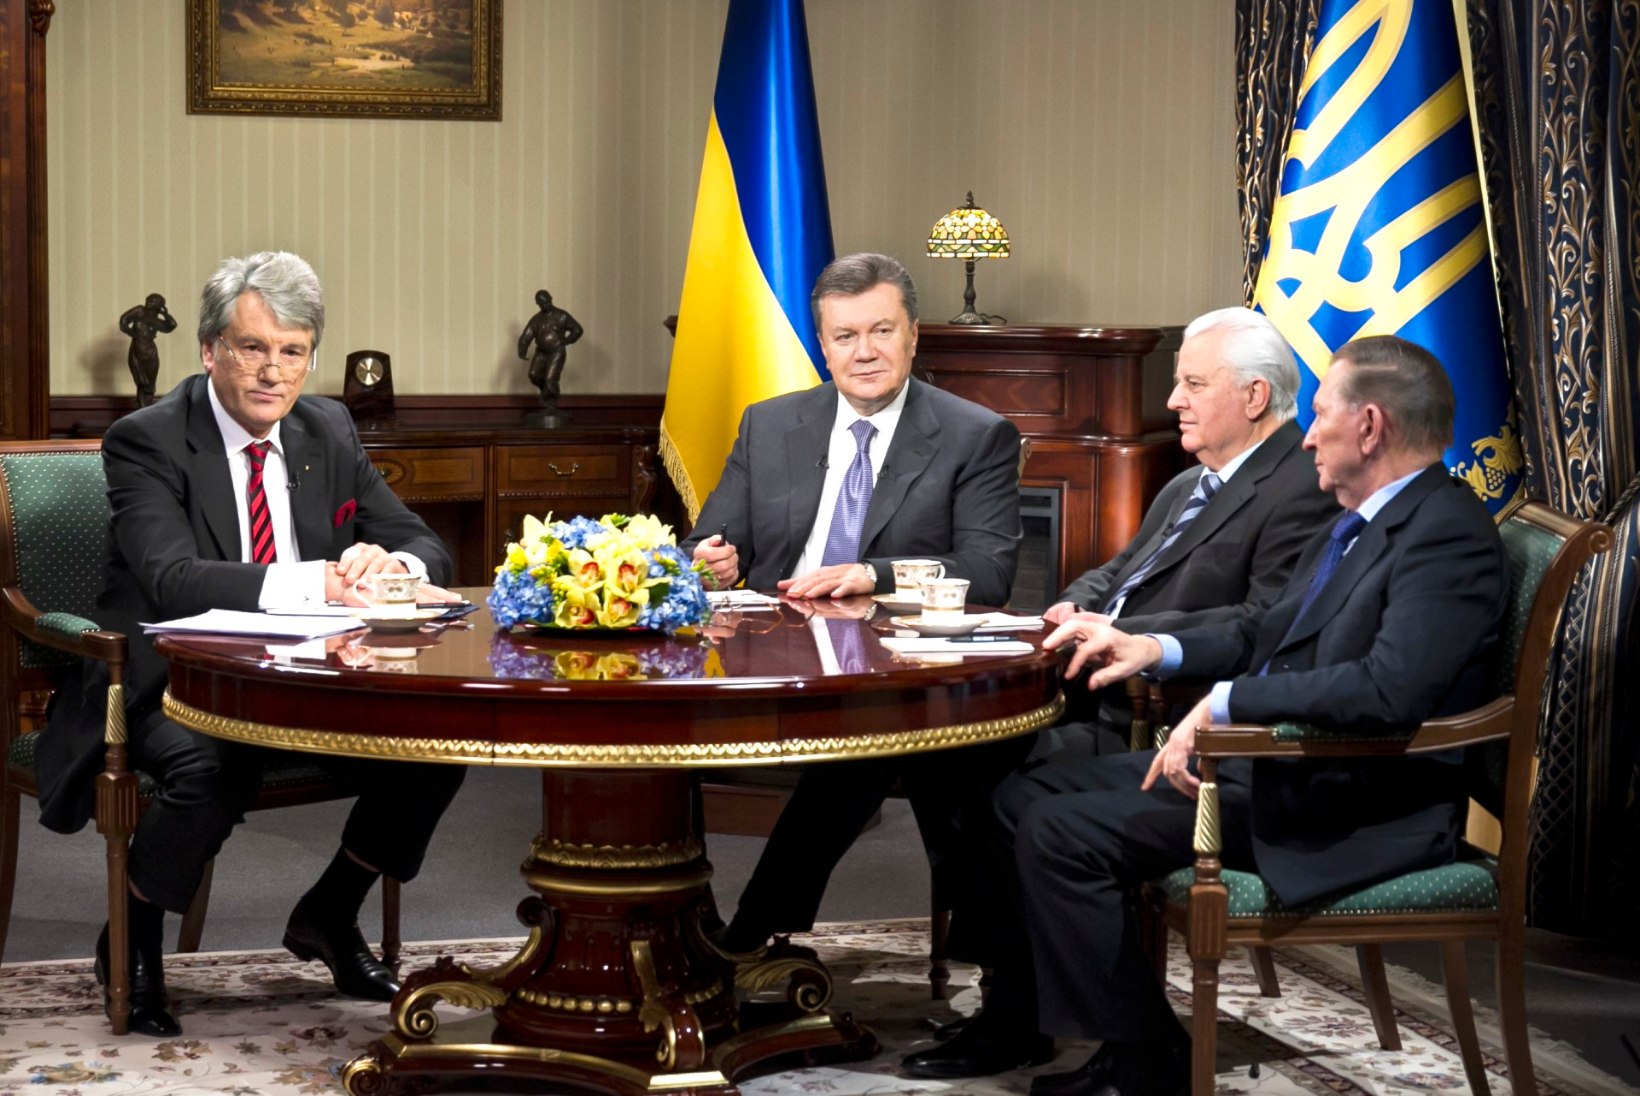 ESIMENE PRESIDENT: Janukovõtši suurim kuritegu oli Vene vägede Ukrainasse kutsumine